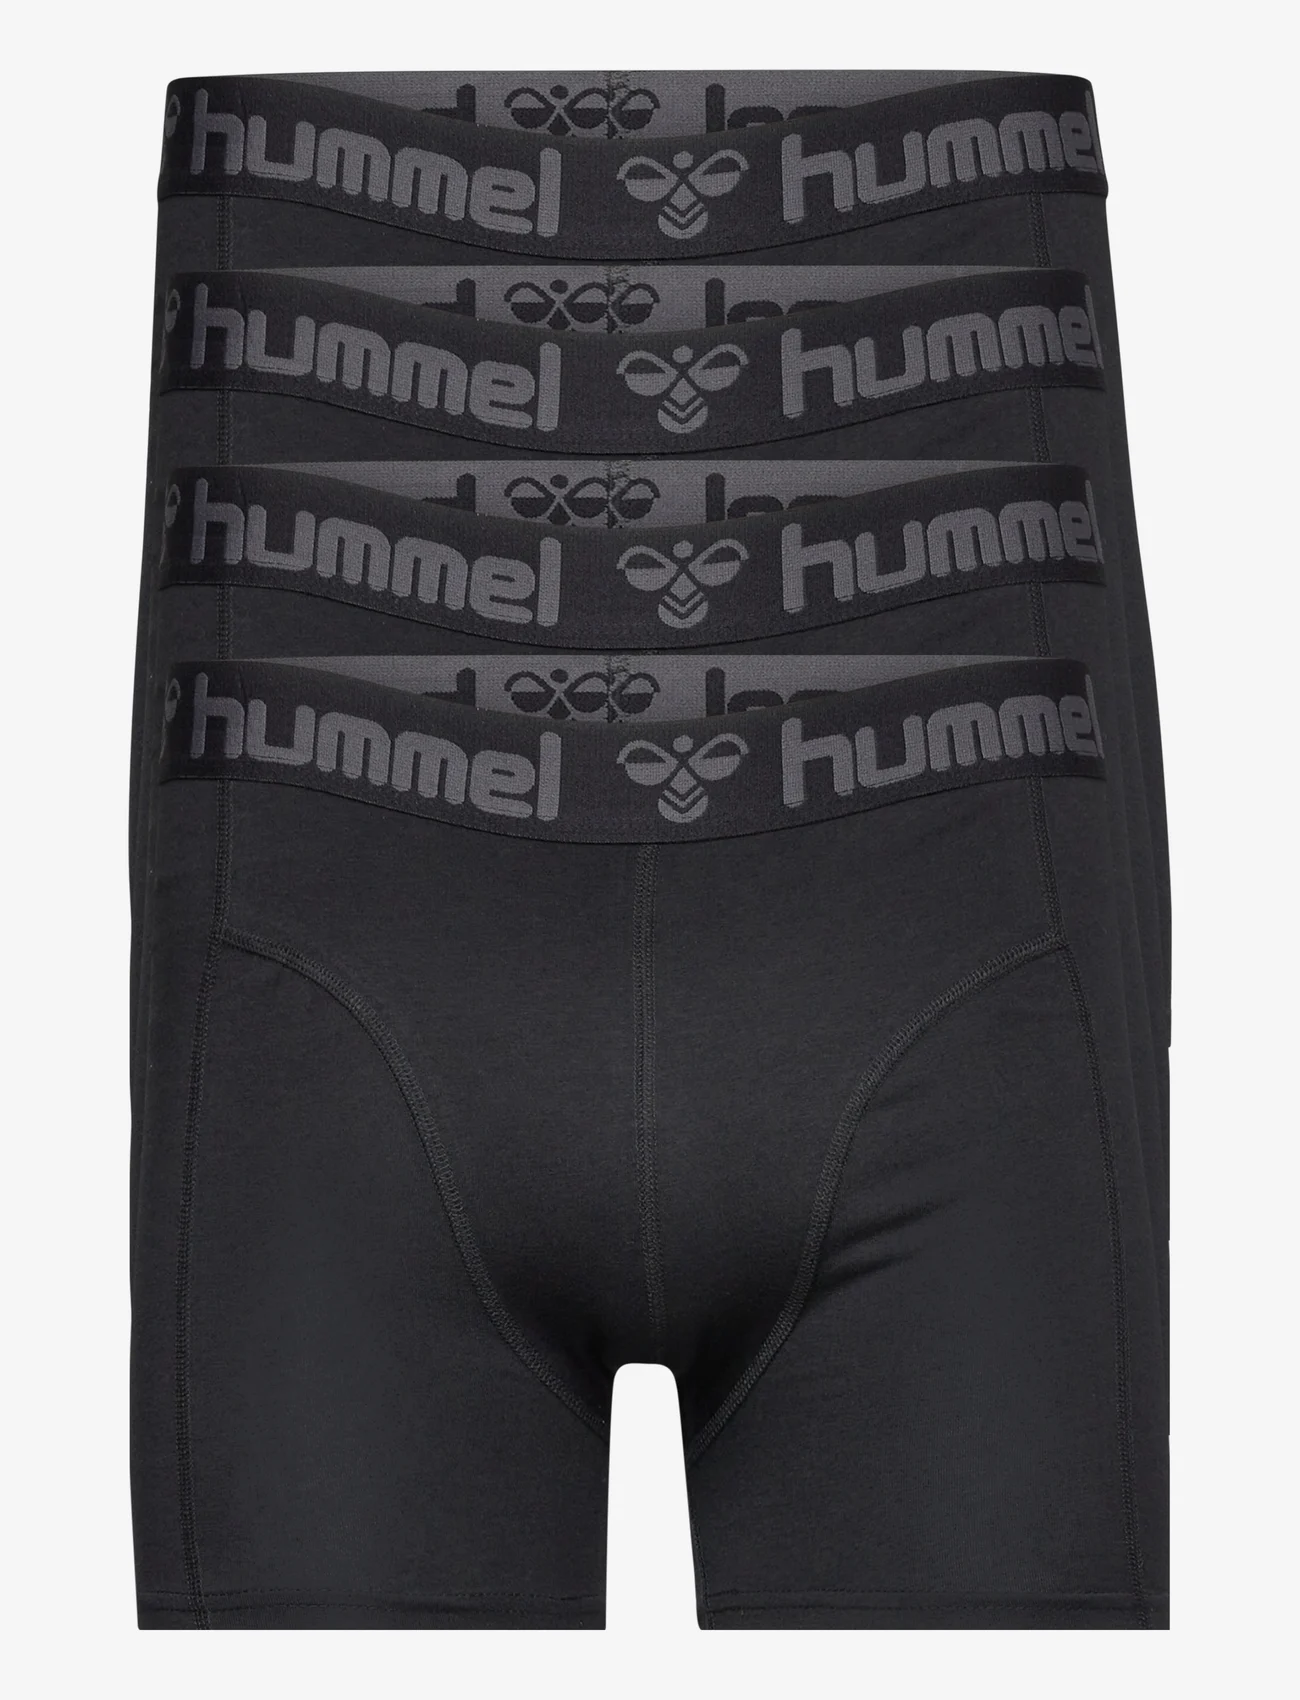 Hummel - hmlMARSTON 4-PACK BOXERS - boxerkalsonger - black/black - 0